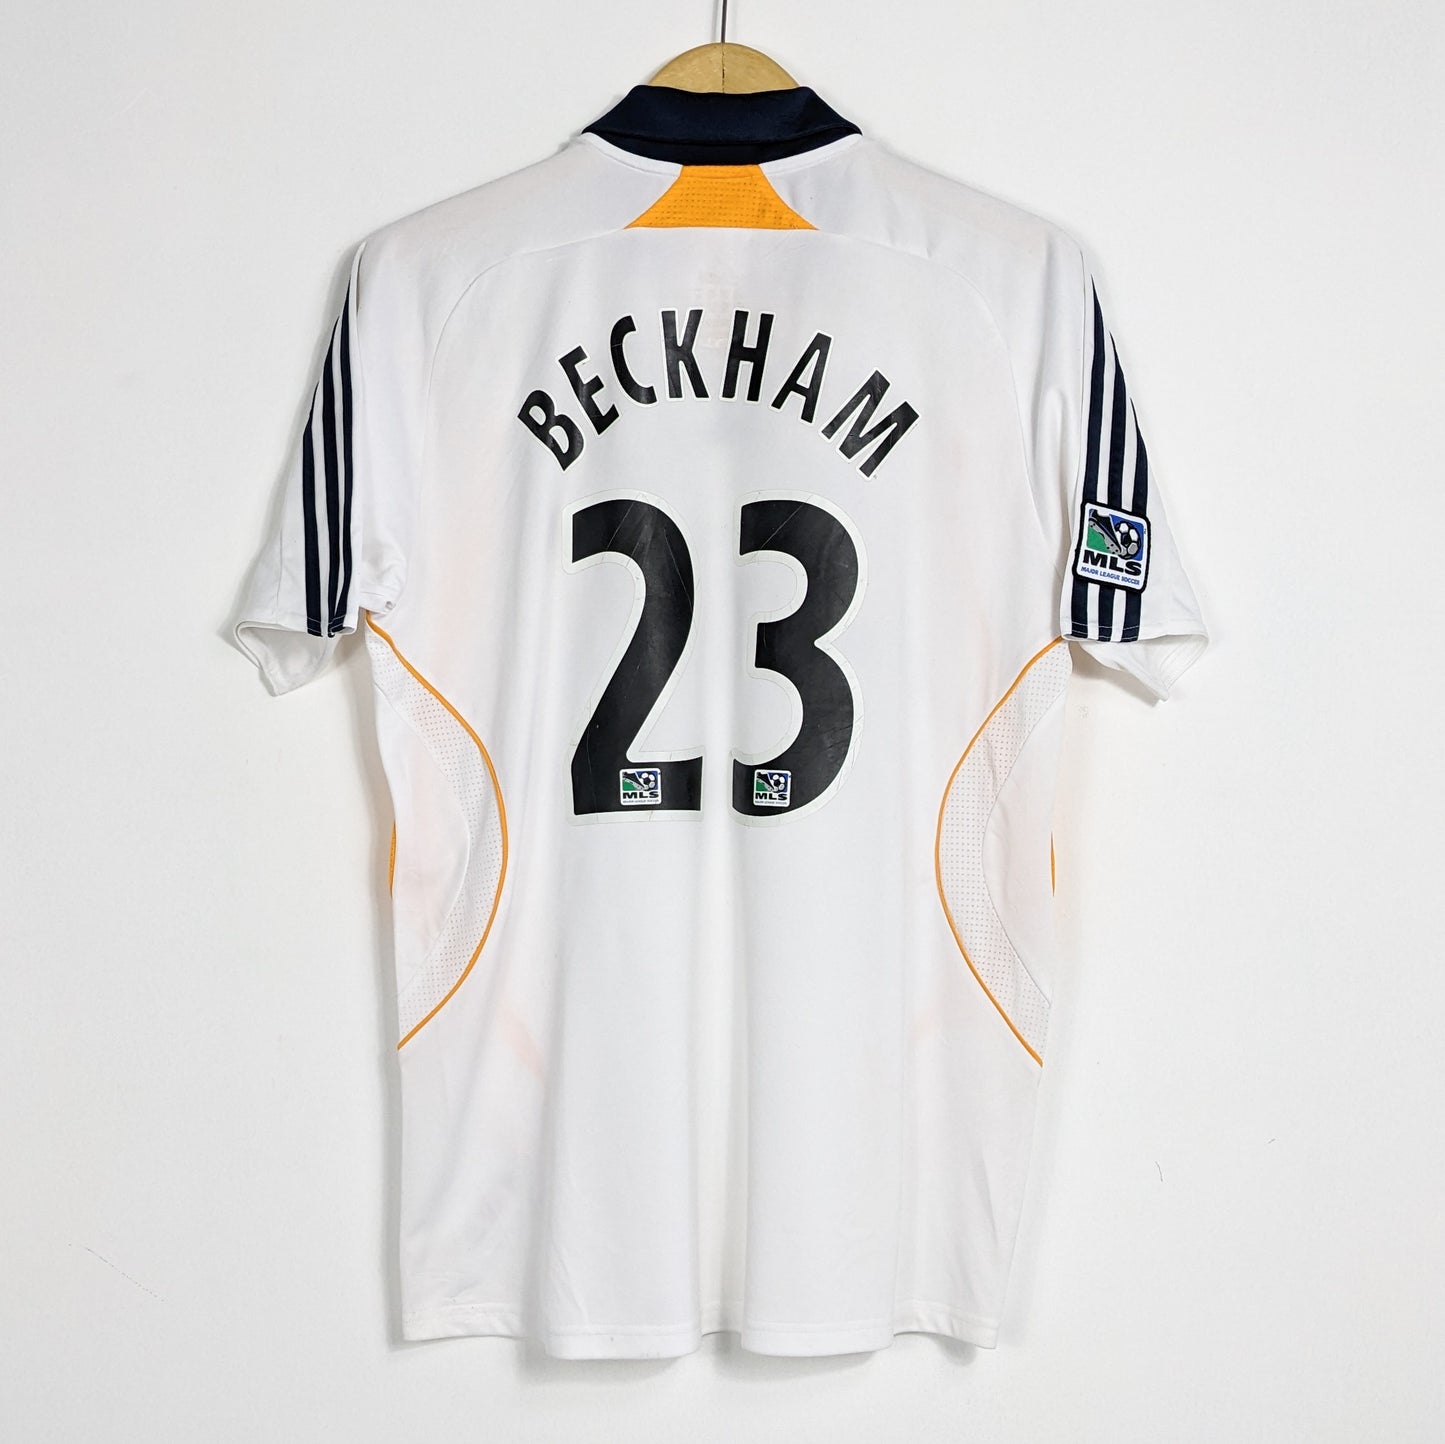 Authentic LA Galaxy 2007-2008 Home - Beckham #23 Size M